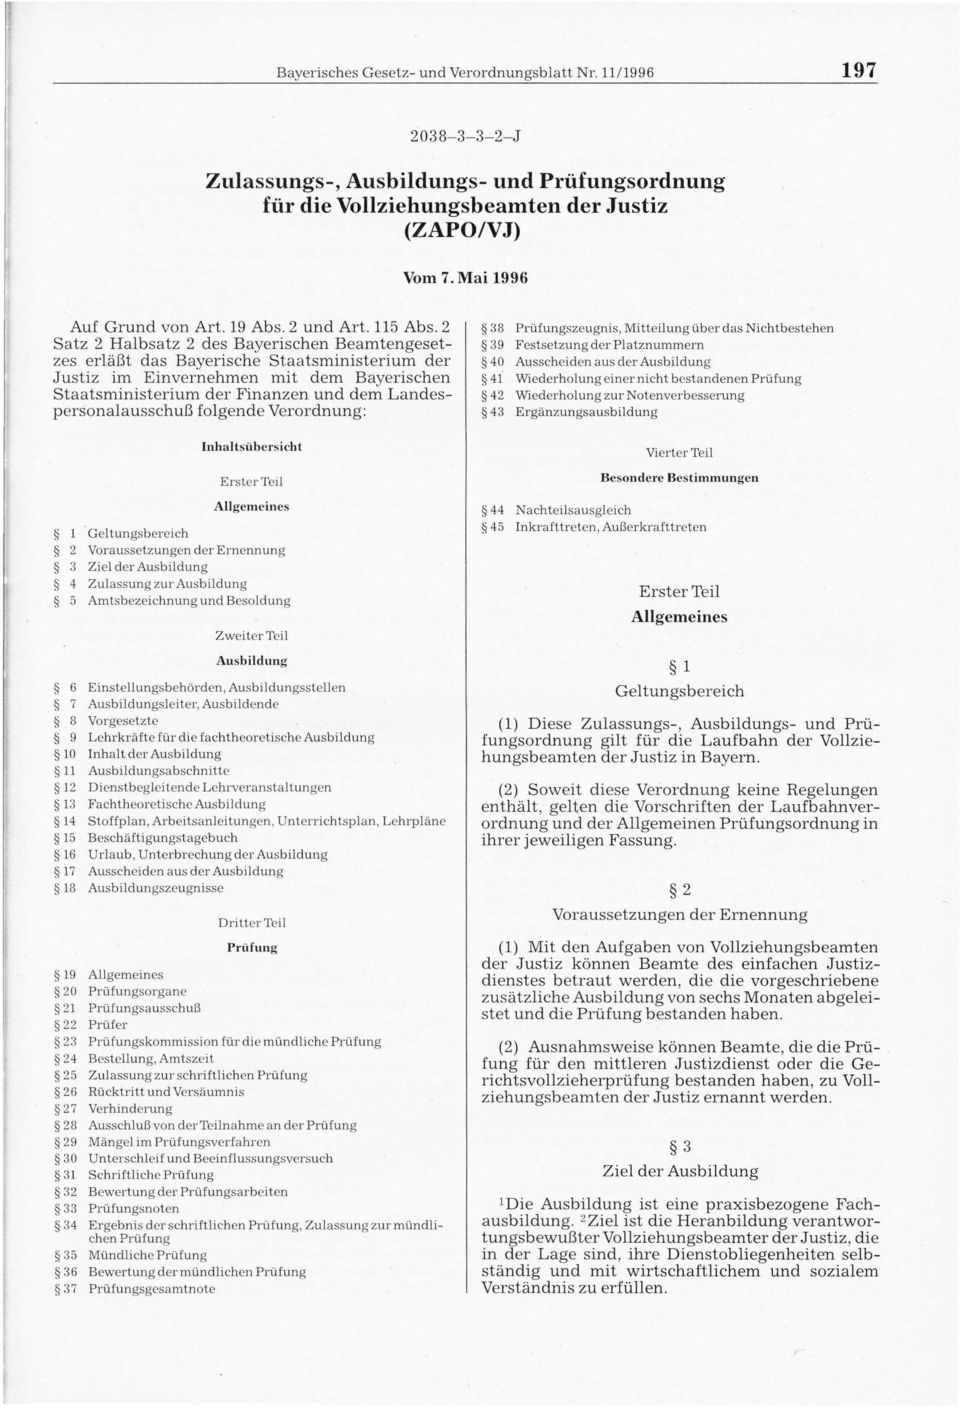 2 Satz 2 Halbsatz 2 des Bayerischen Beamtengesetzes erläßt das Bayerische Staatsministerium der Justiz im Einvernehmen mit dem Bayerischen Staatsministerium der Finanzen und dem